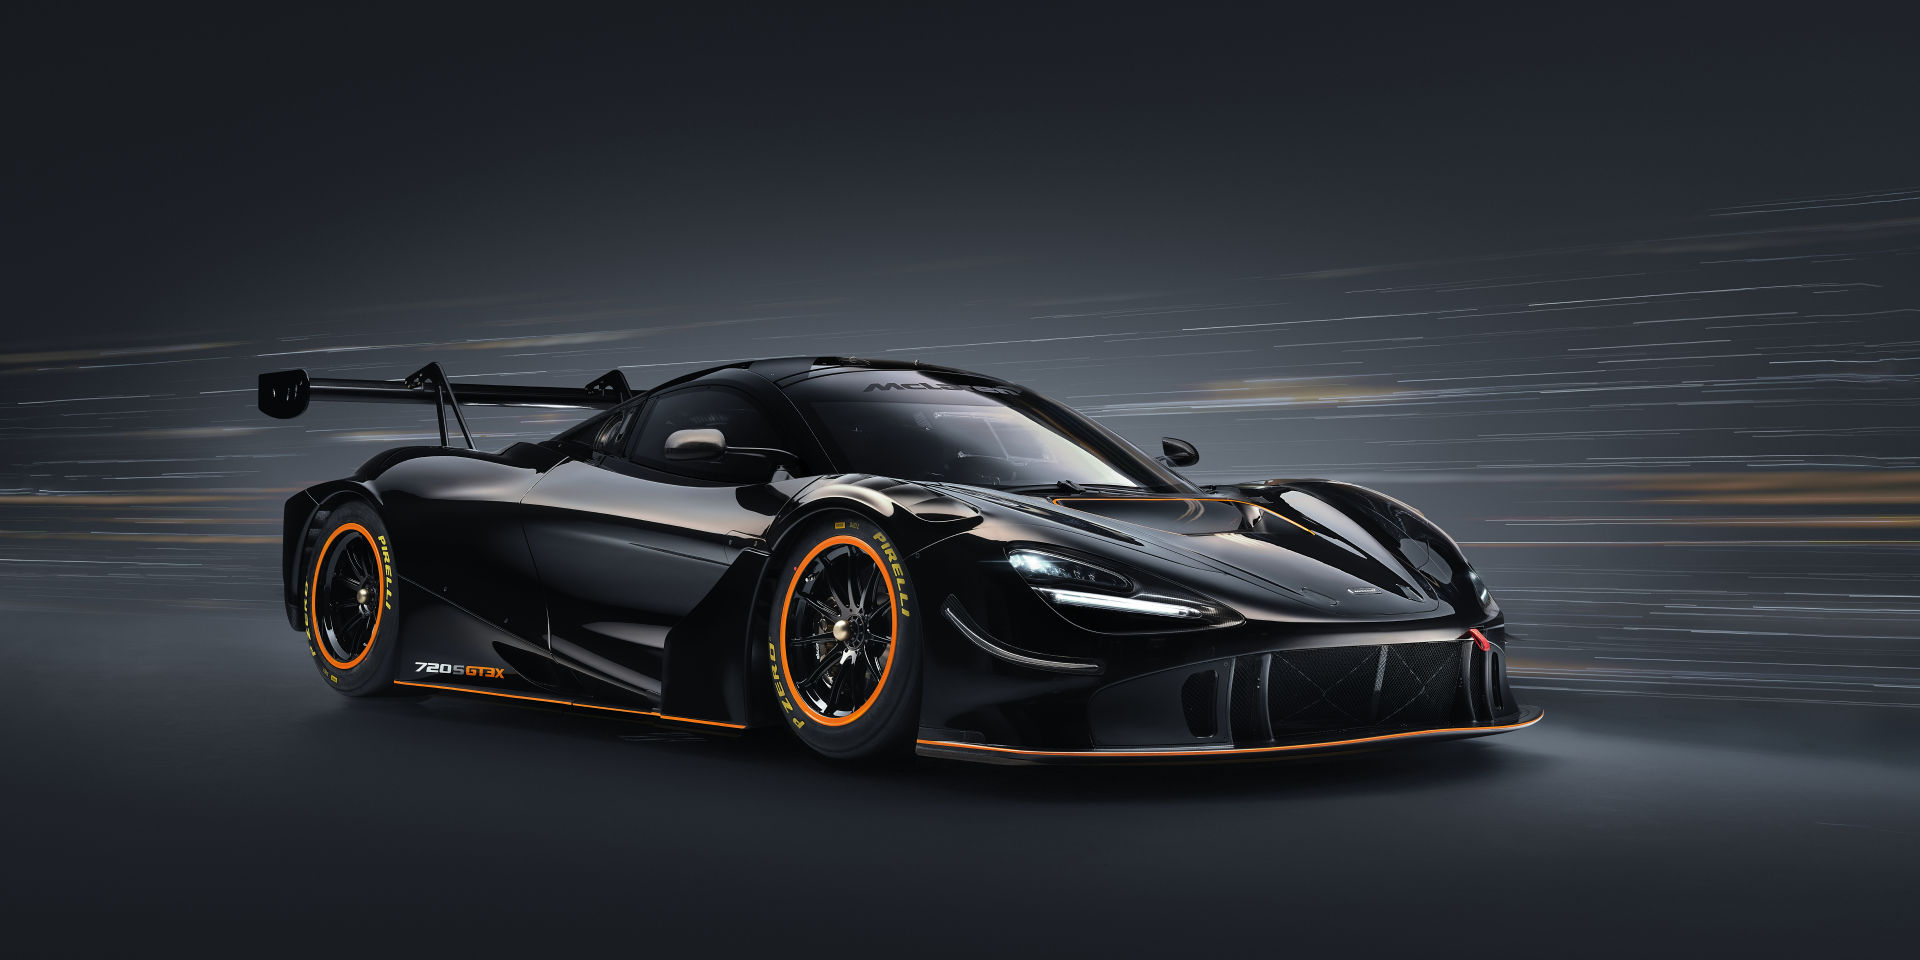 McLaren Customer Racing - Models